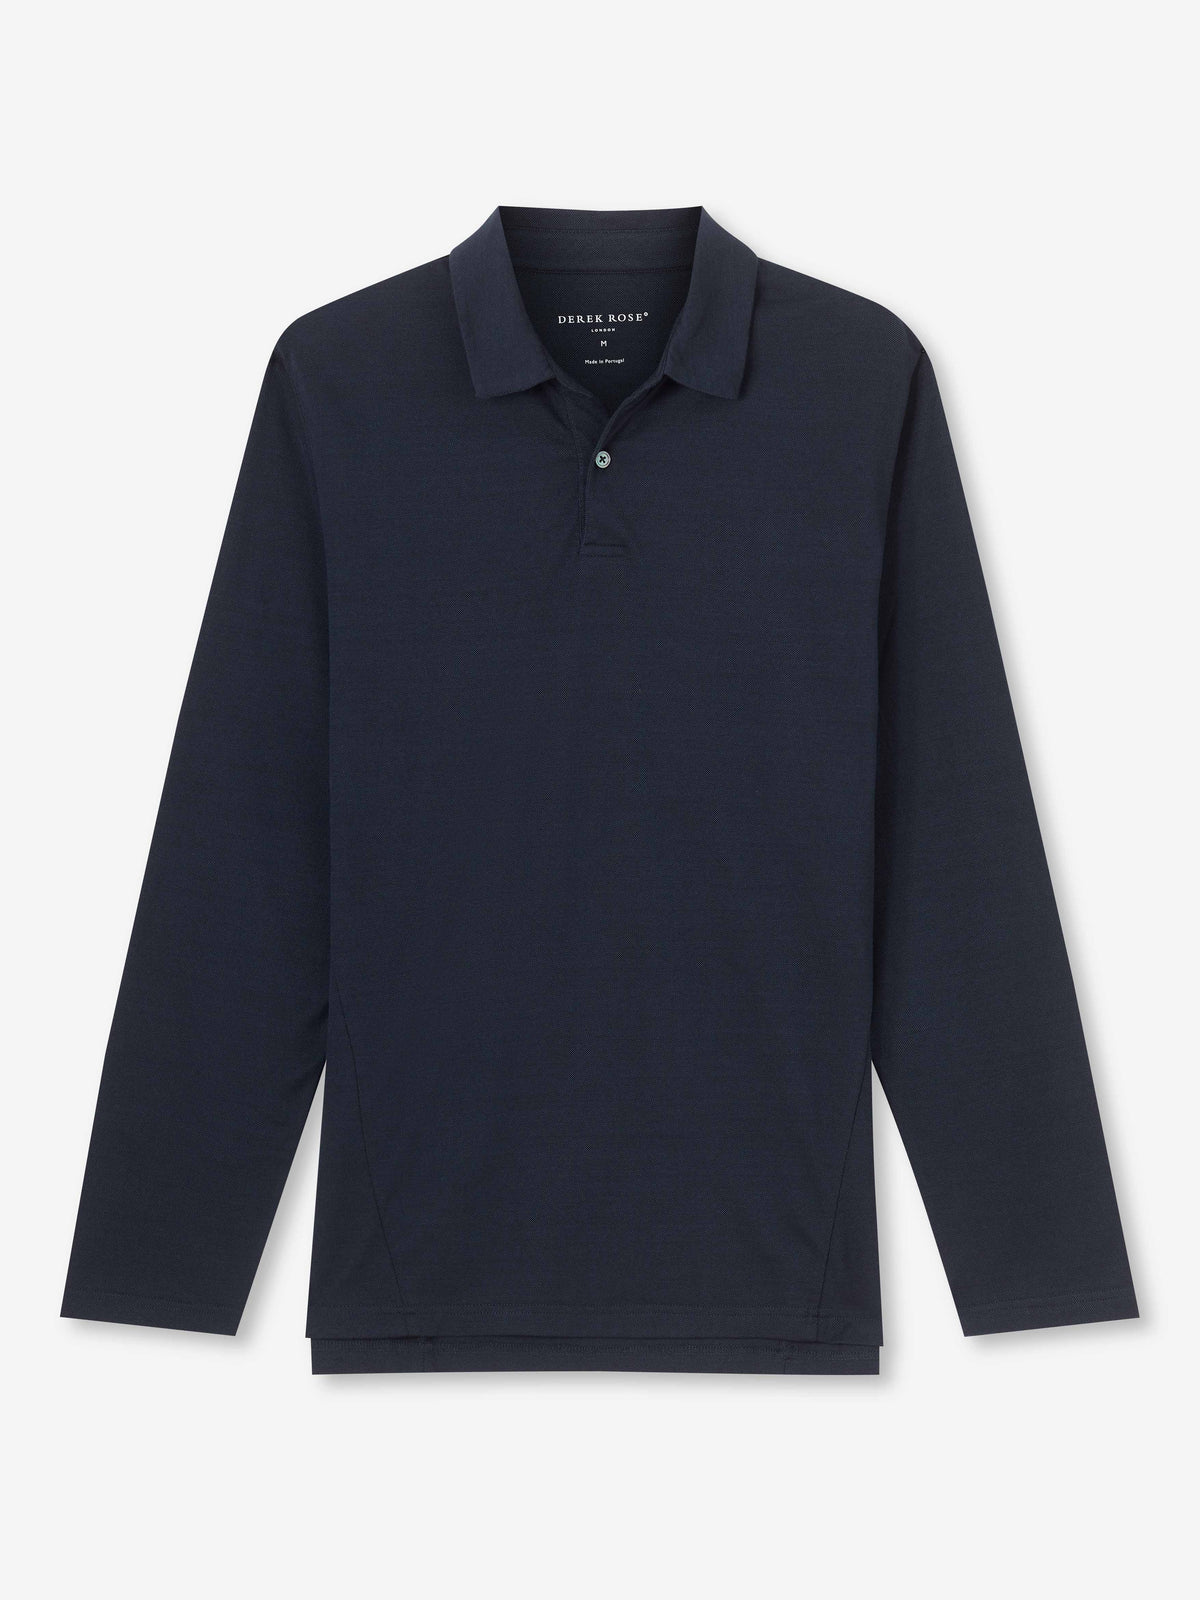 Men's Long Sleeve Polo Shirt Ramsay 2 Pique Cotton Tencel Navy